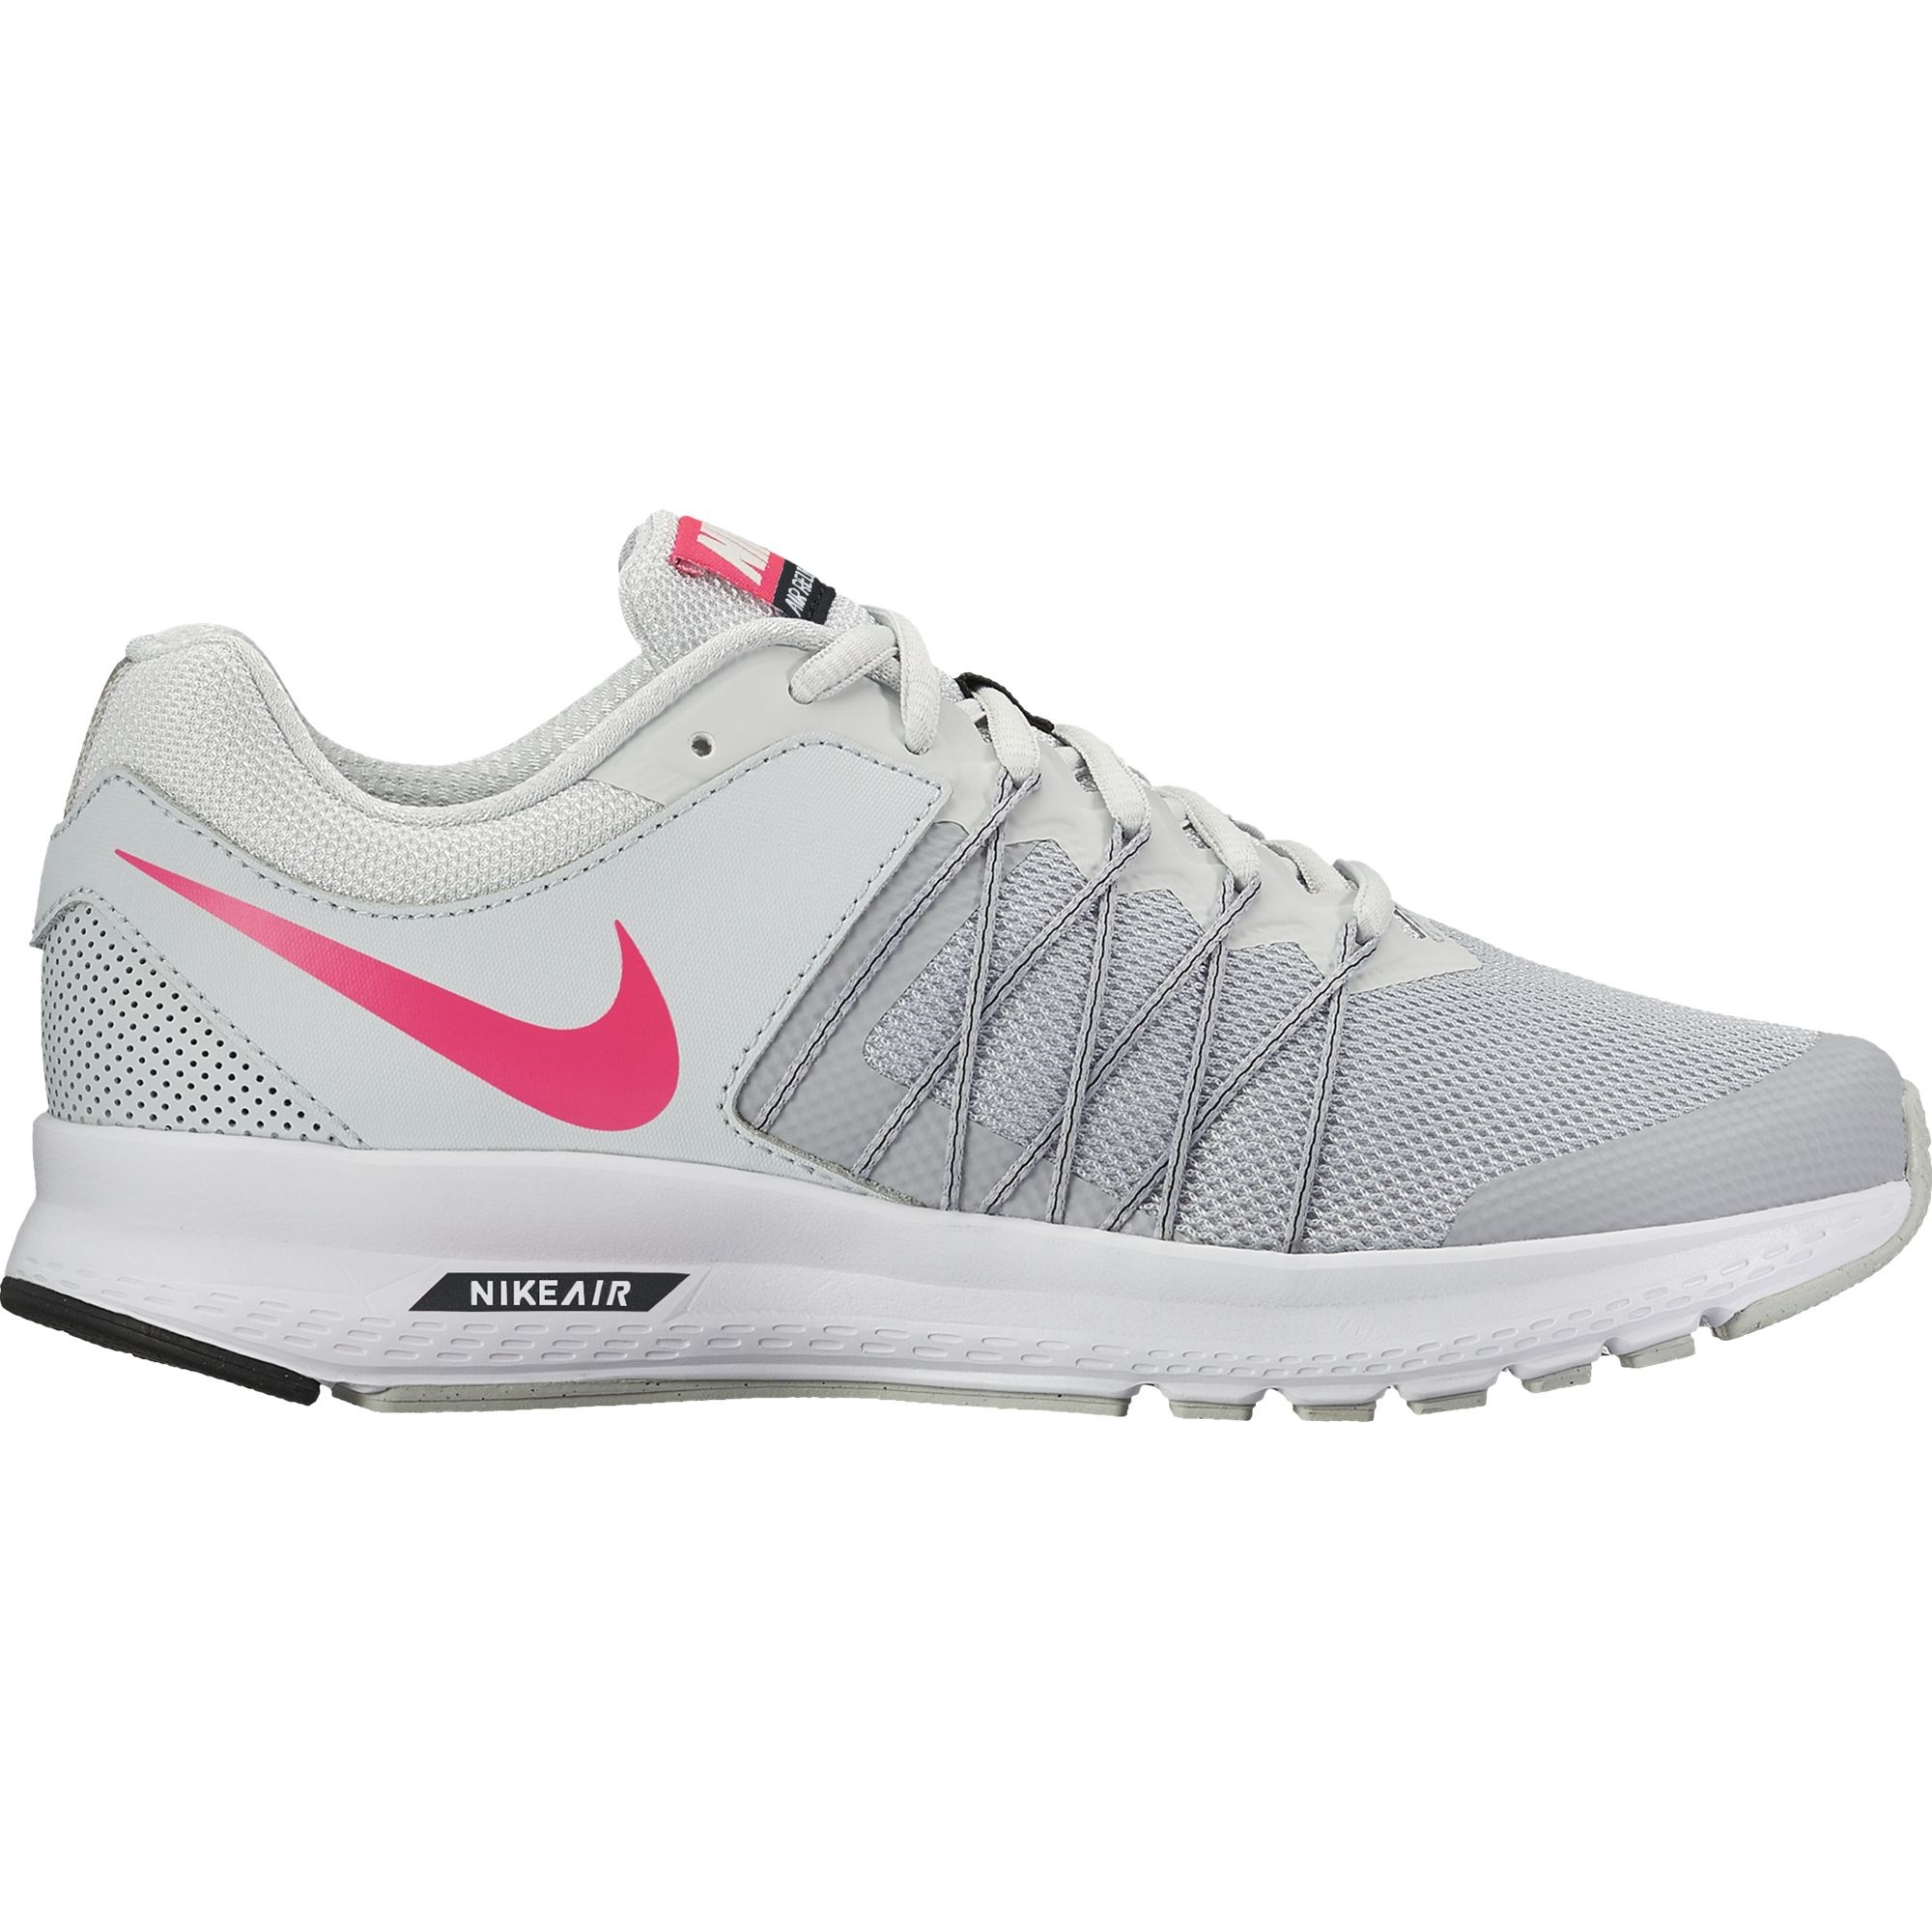 Nike Air Relentless 6 Bayan Spor Ayakkabı Ürün kodu: 843882-009 | Etichet  Sport